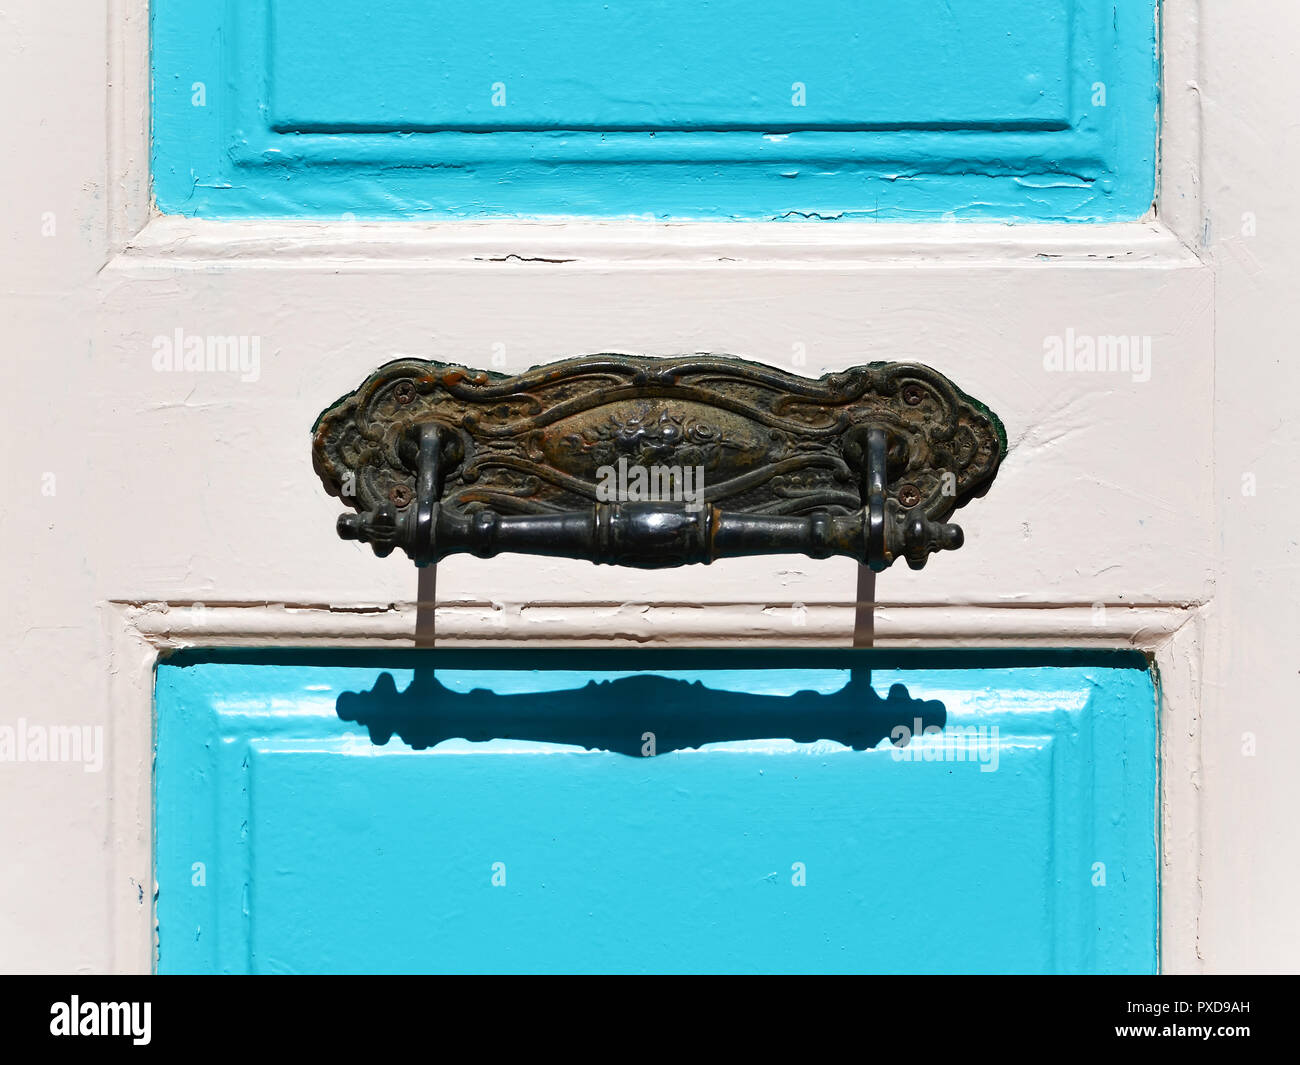 Poignée de porte en fer forgé ornemental sur une porte blanc-bleu Banque D'Images